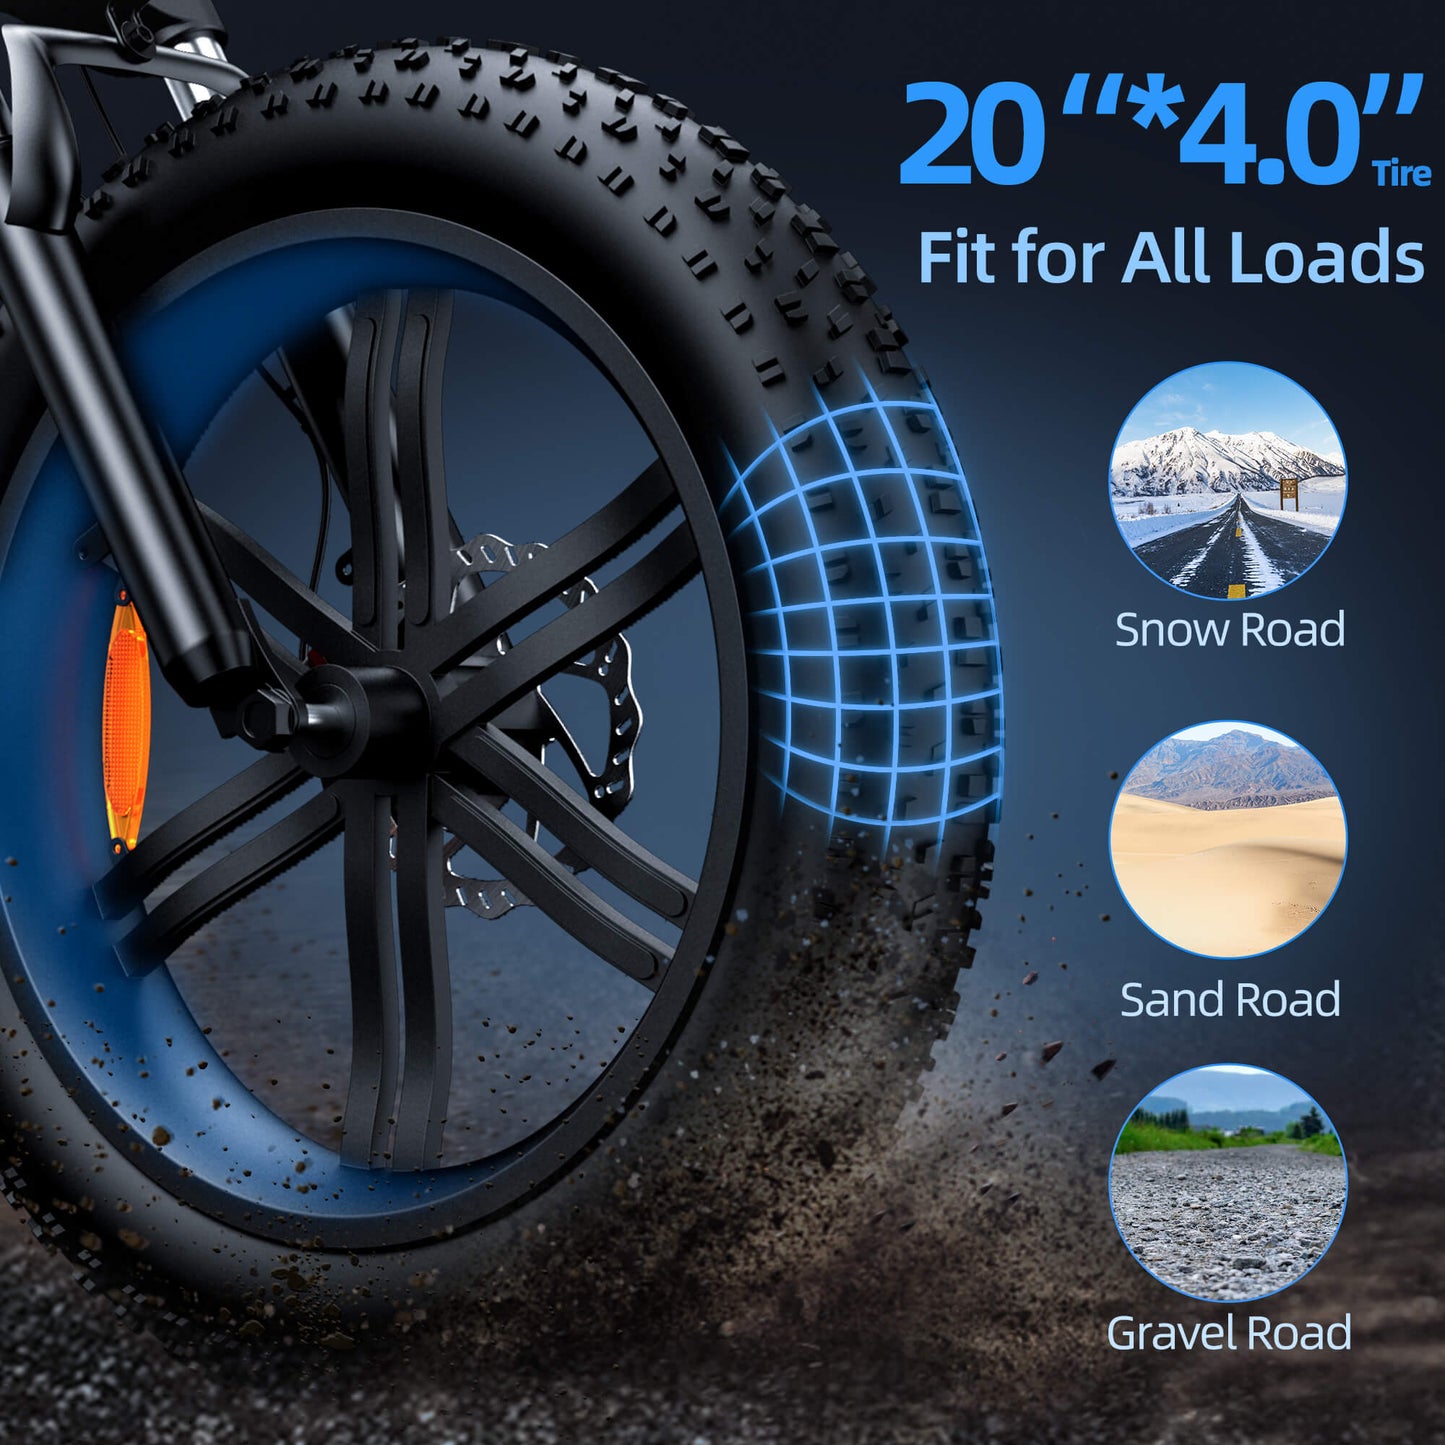 ADO A20F + ebike per pneumatici grassi pieghevoli senza throtte (versione UE)